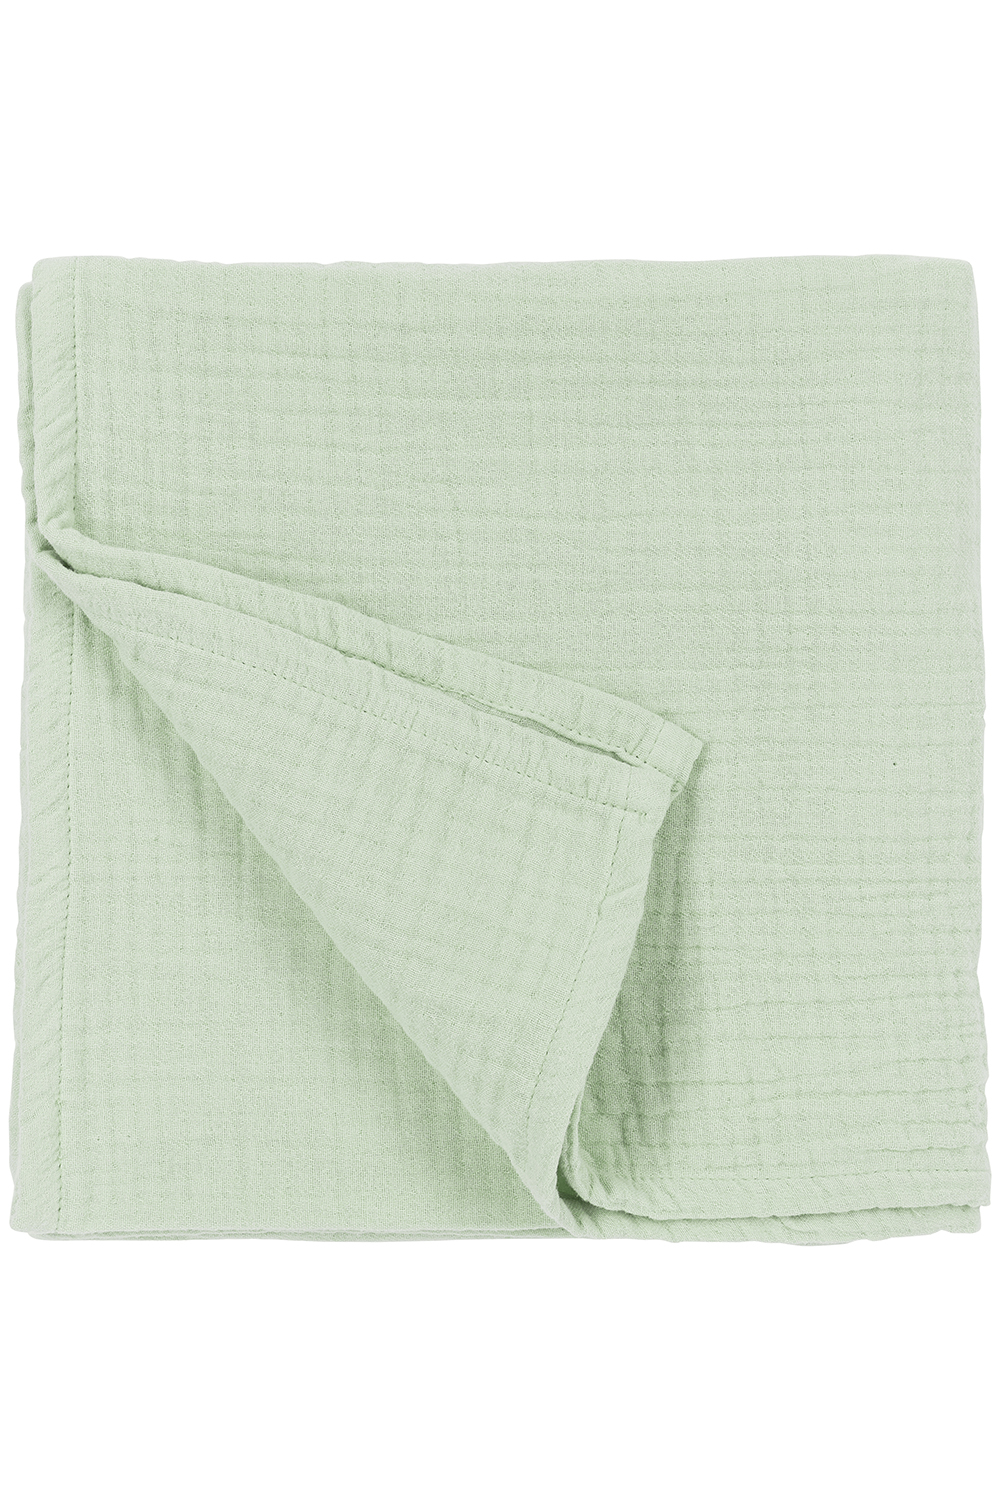 Blanket pre-washed muslin Uni - soft green - 140x200cm